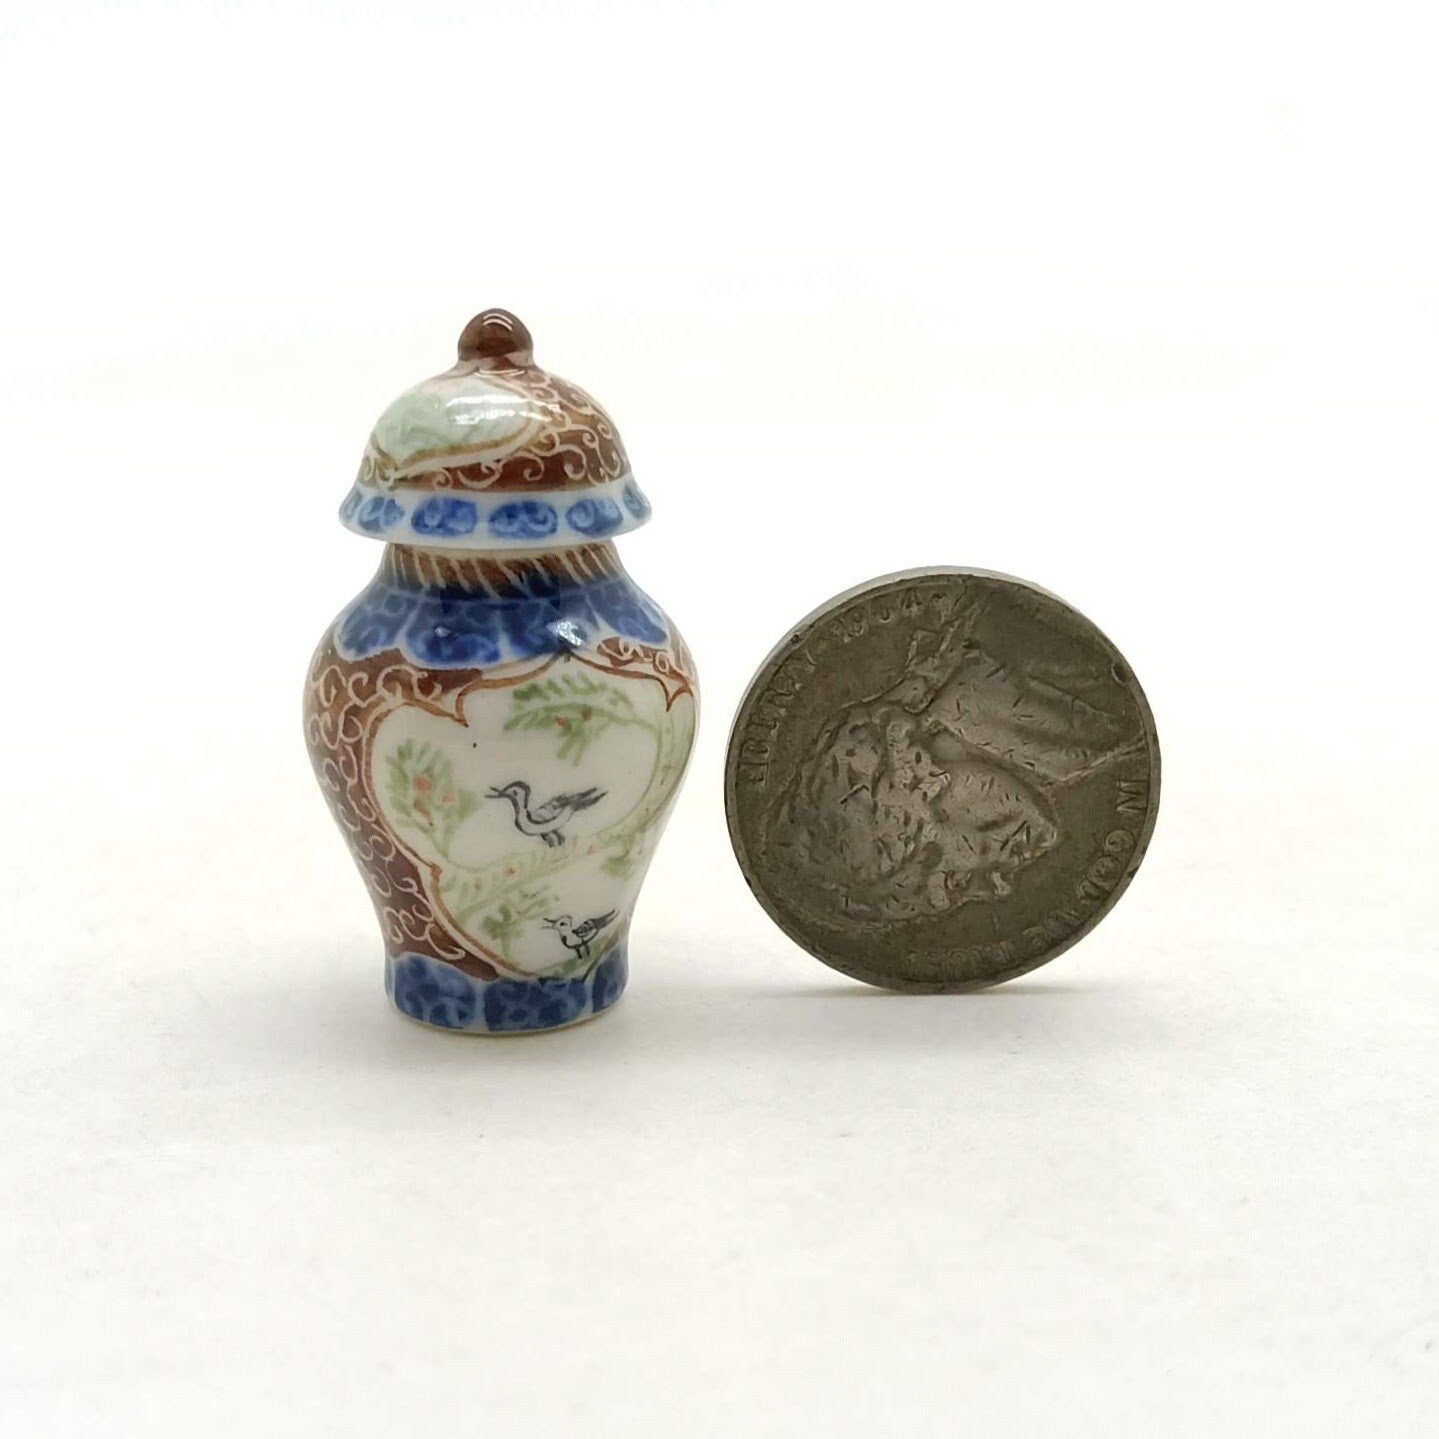 Vase + Lid Ceramic Miniature Ceramic Painted